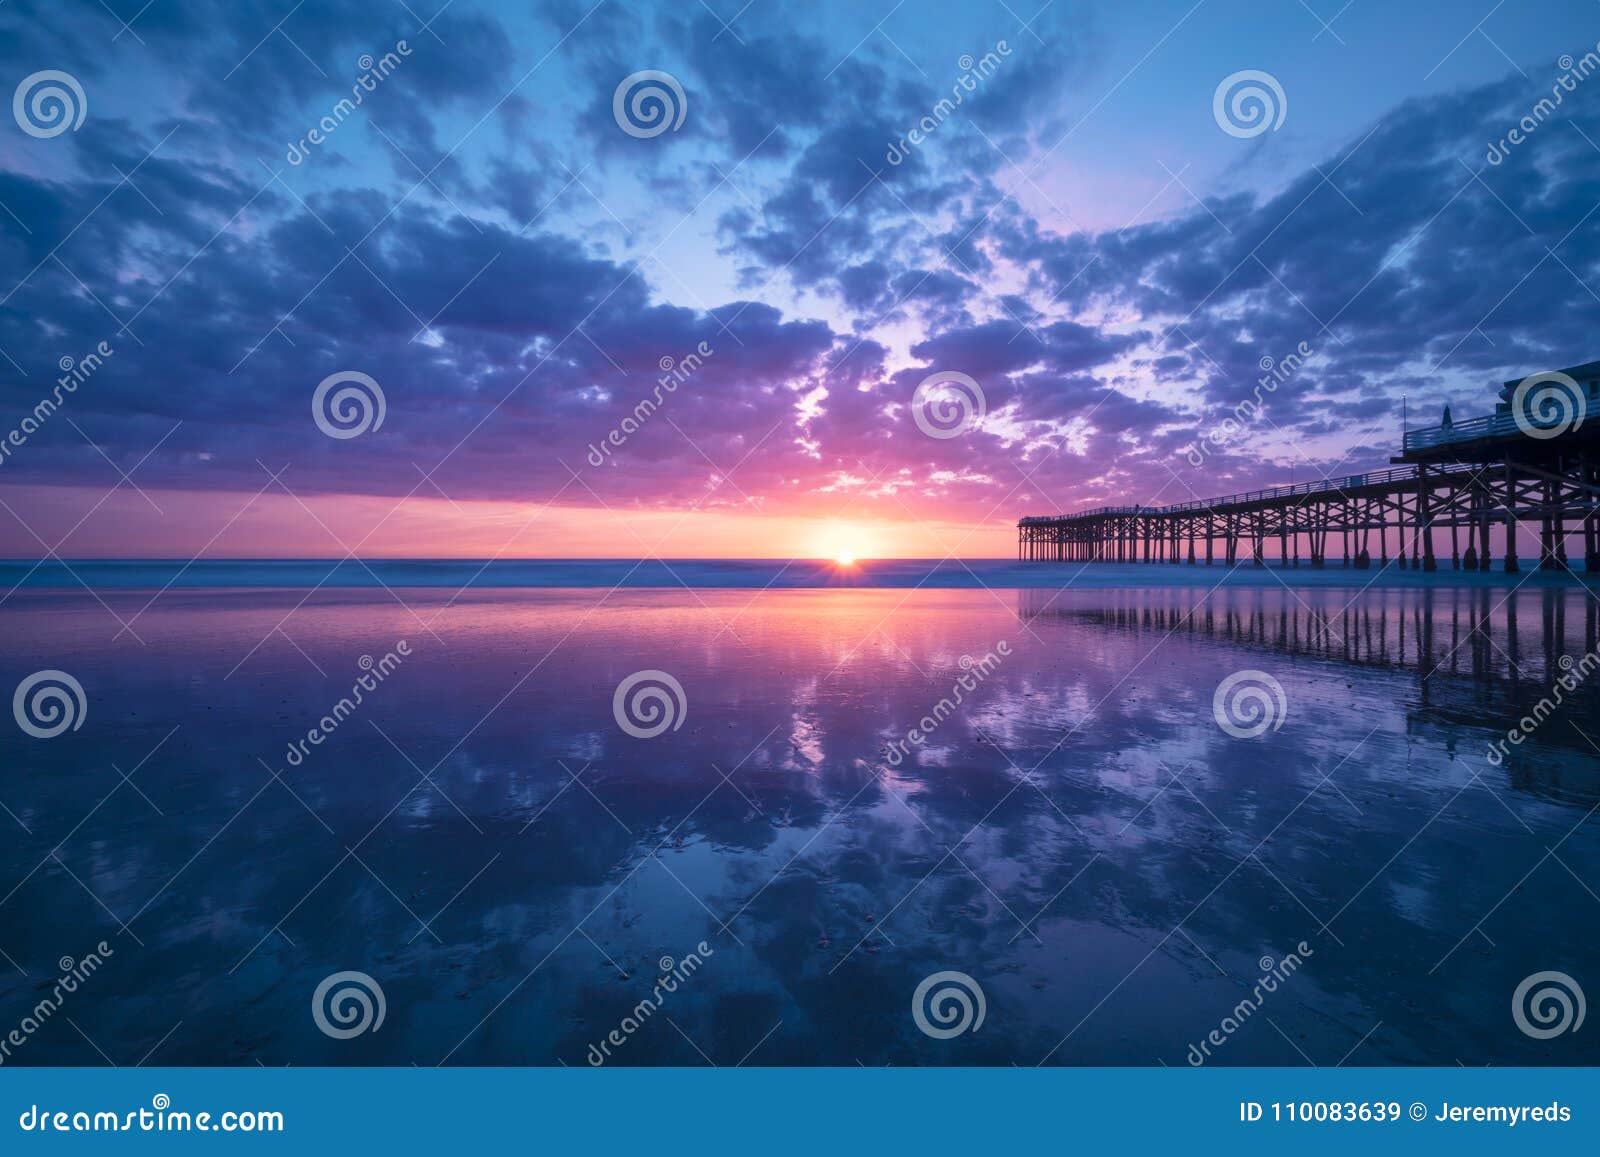 california beach sunset at pacific beach, san diego